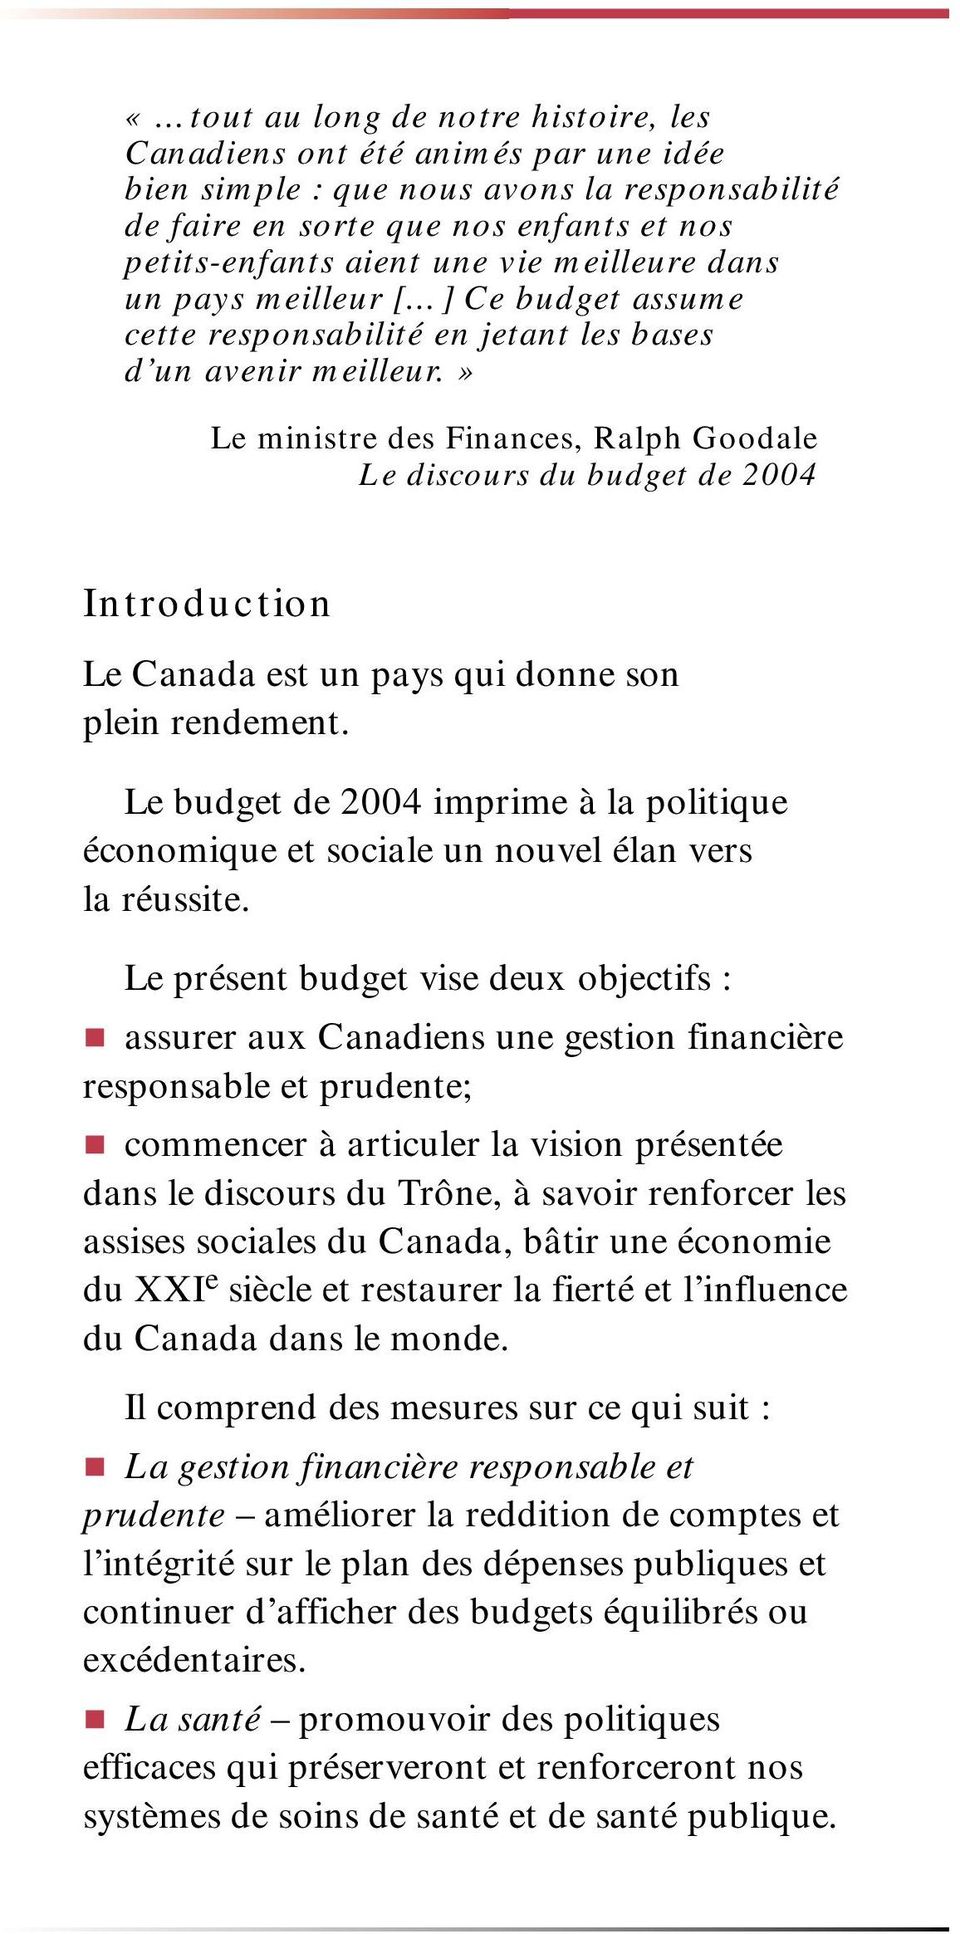 » Le ministre des Finances, Ralph Goodale Le discours du budget de 2004 Introduction Le Canada est un pays qui donne son plein rendement.